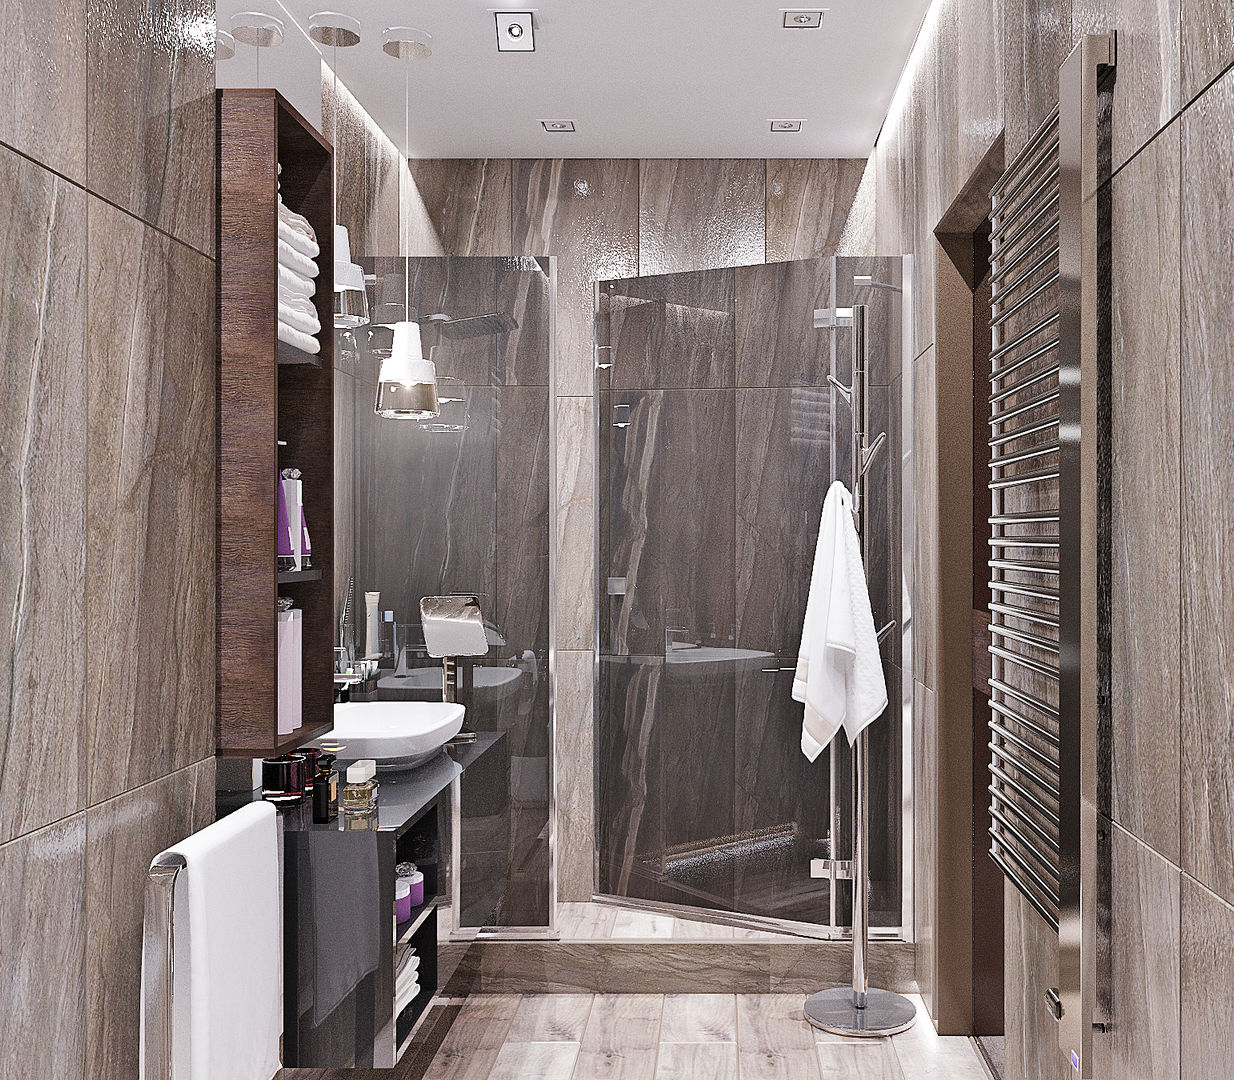 Ванная комната в стиле минимализм, Студия дизайна ROMANIUK DESIGN Студия дизайна ROMANIUK DESIGN ห้องน้ำ